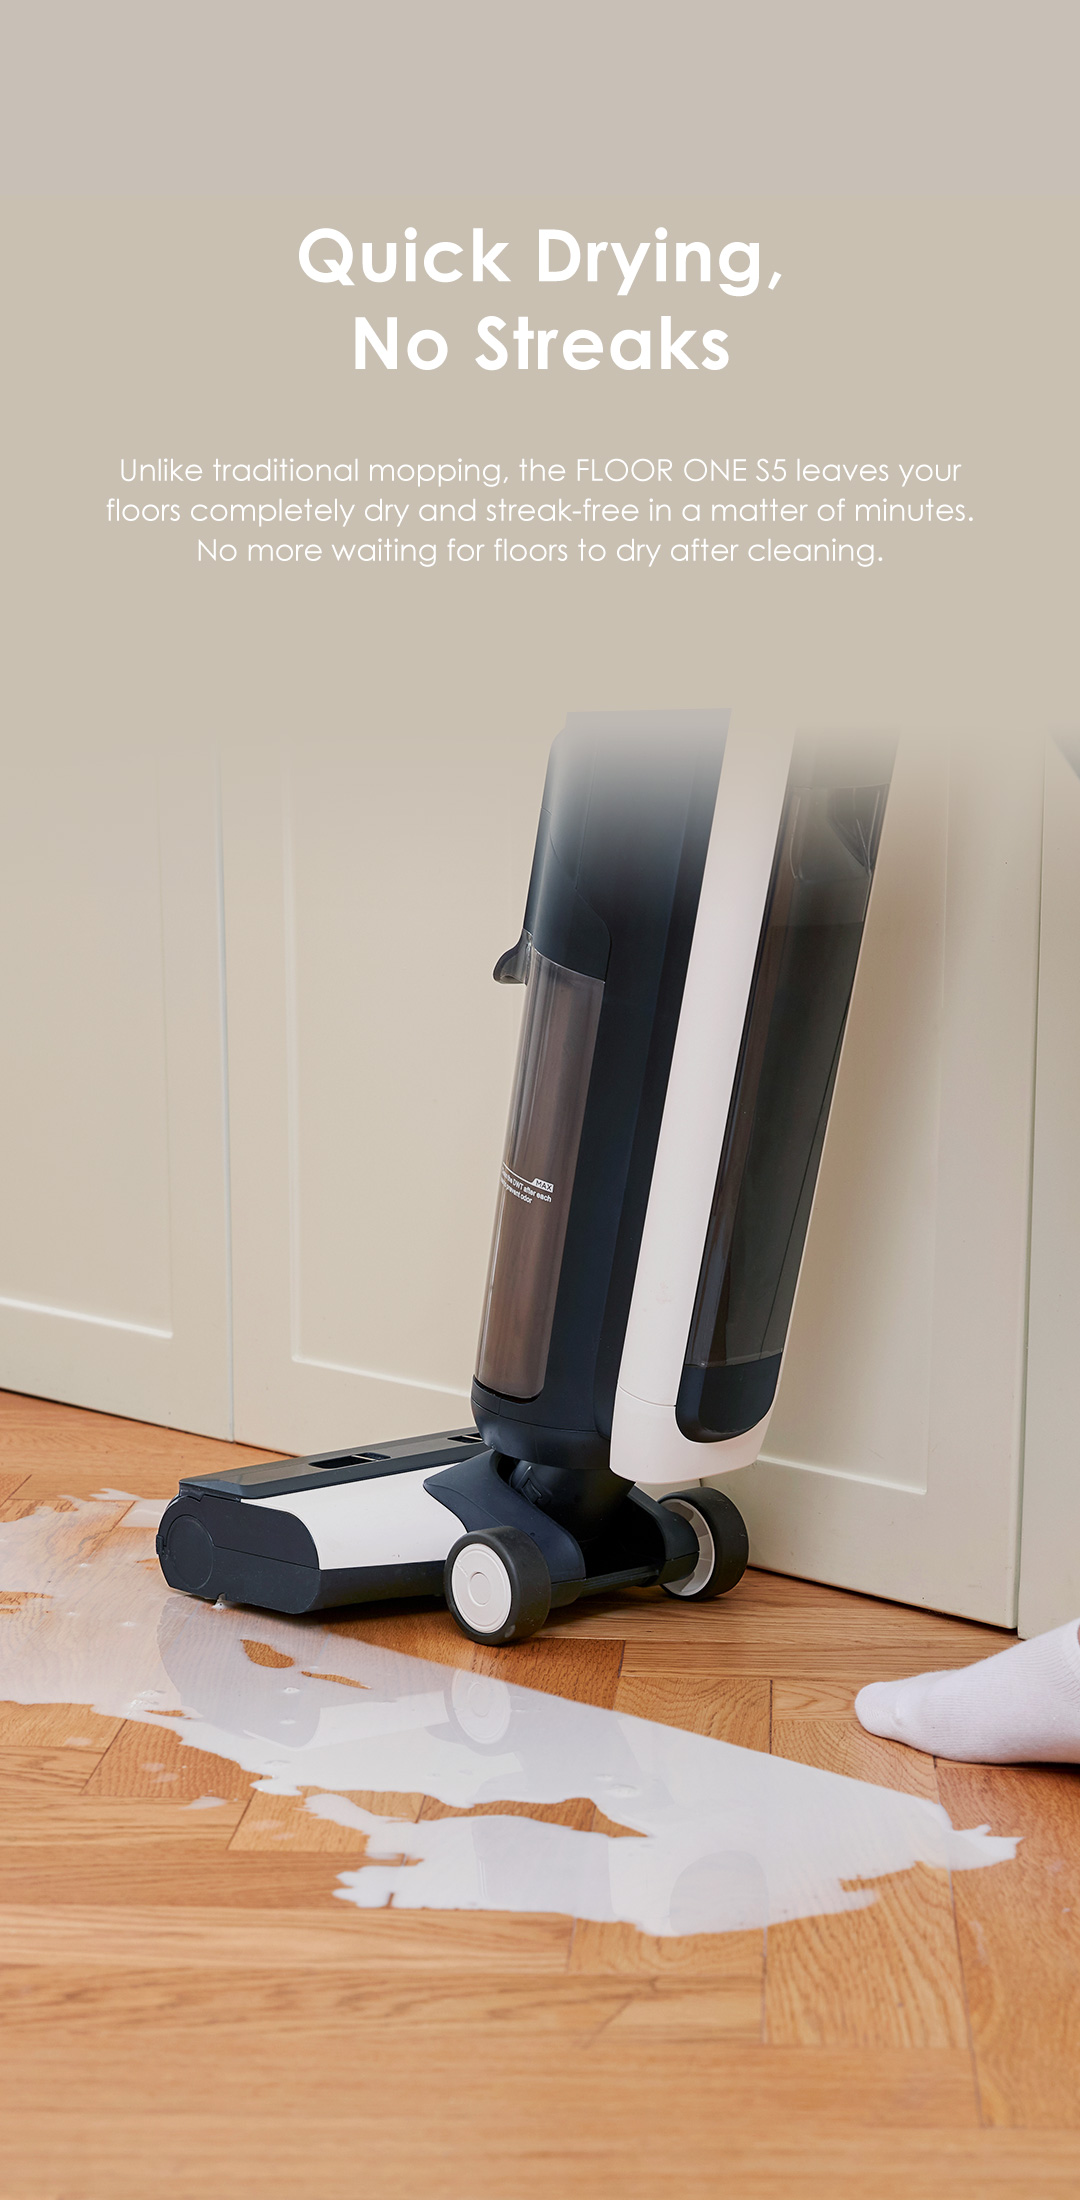 Tineco FLOOR ONE S5: Smart Cordless Wet Dry Vacuum Cleaner | Tineco US